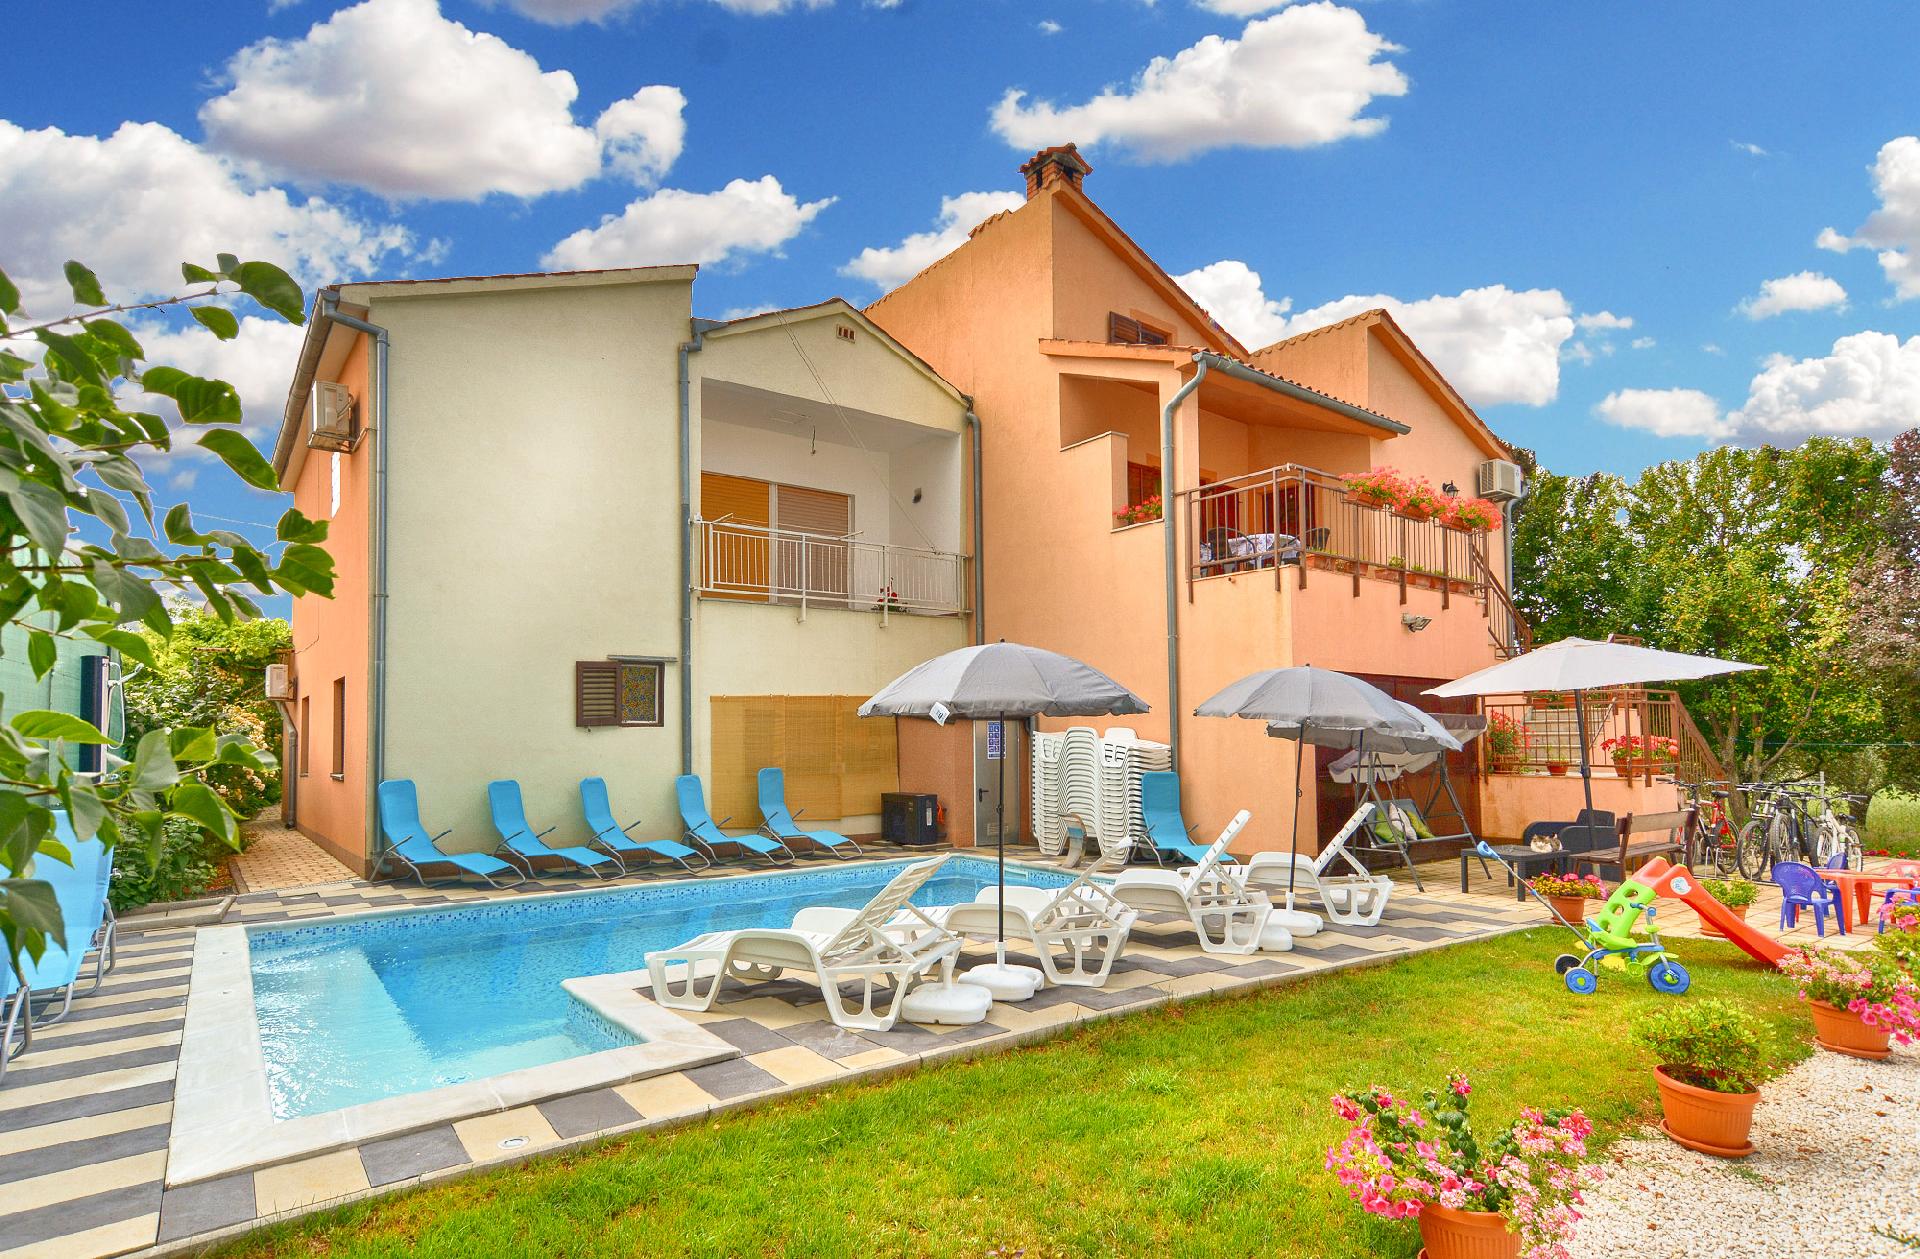 Ferienwohnung für 8 Personen ca. 109 m²   in Istrien